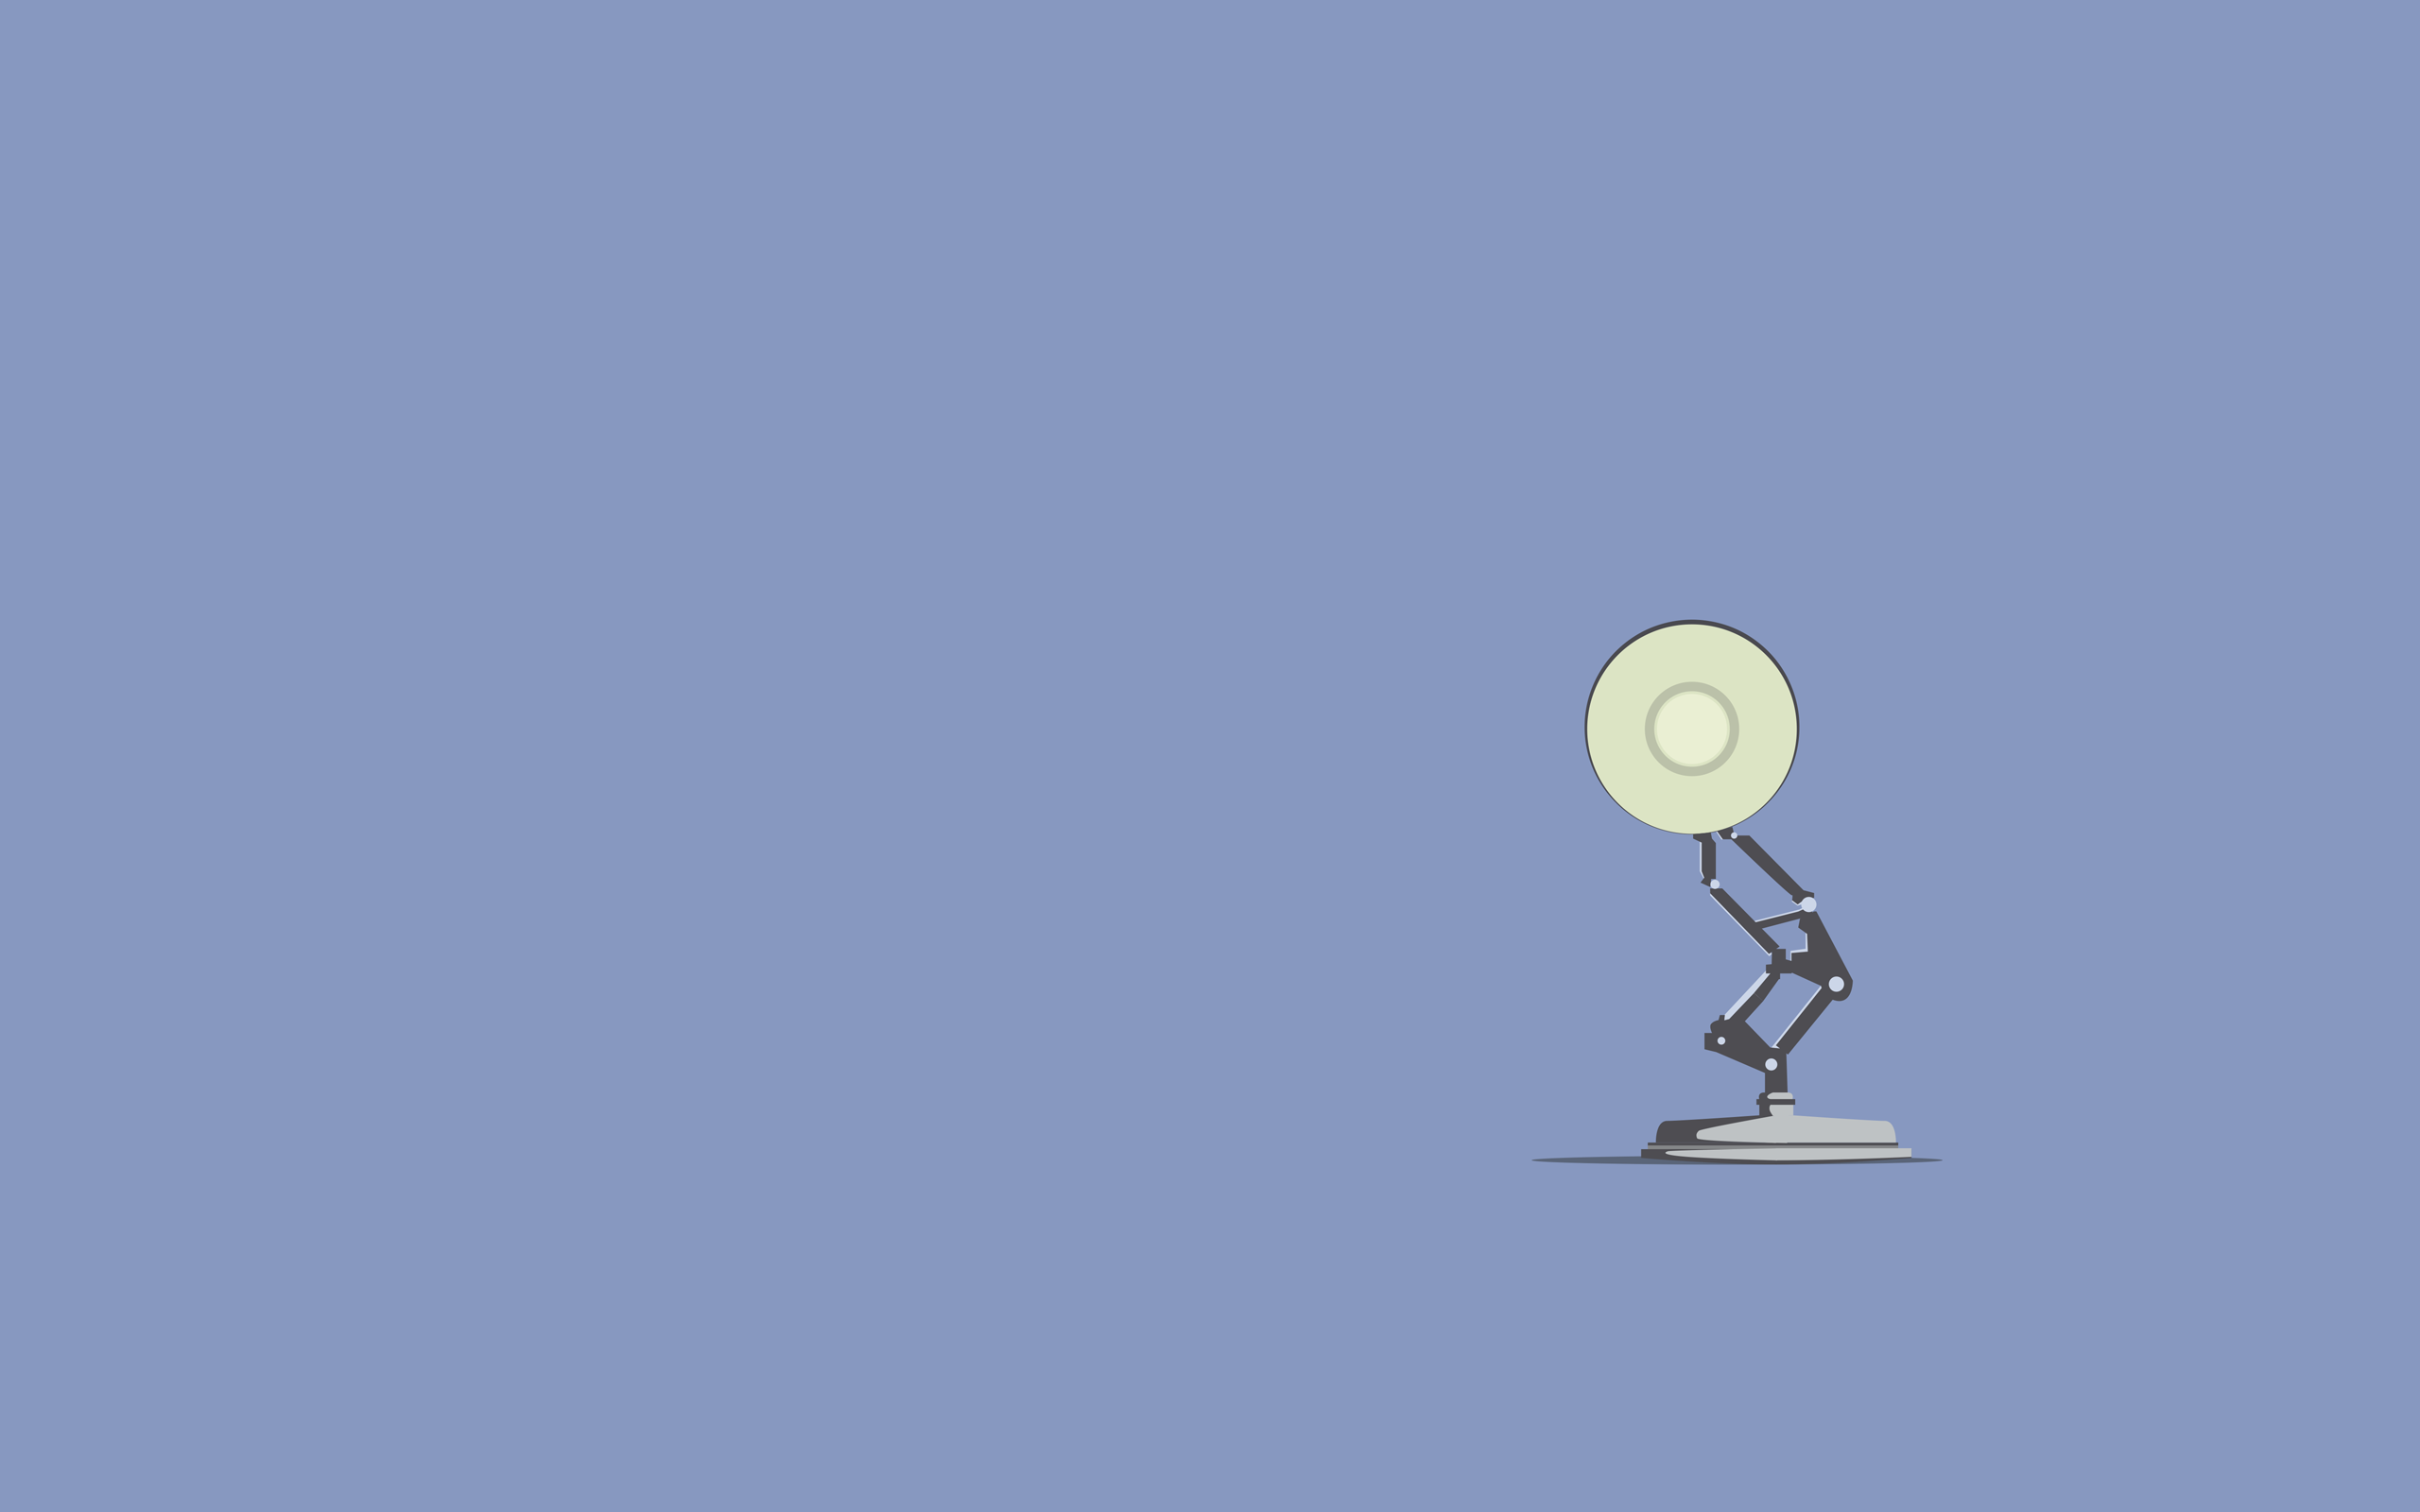 Pixar Lamp Wallpaper